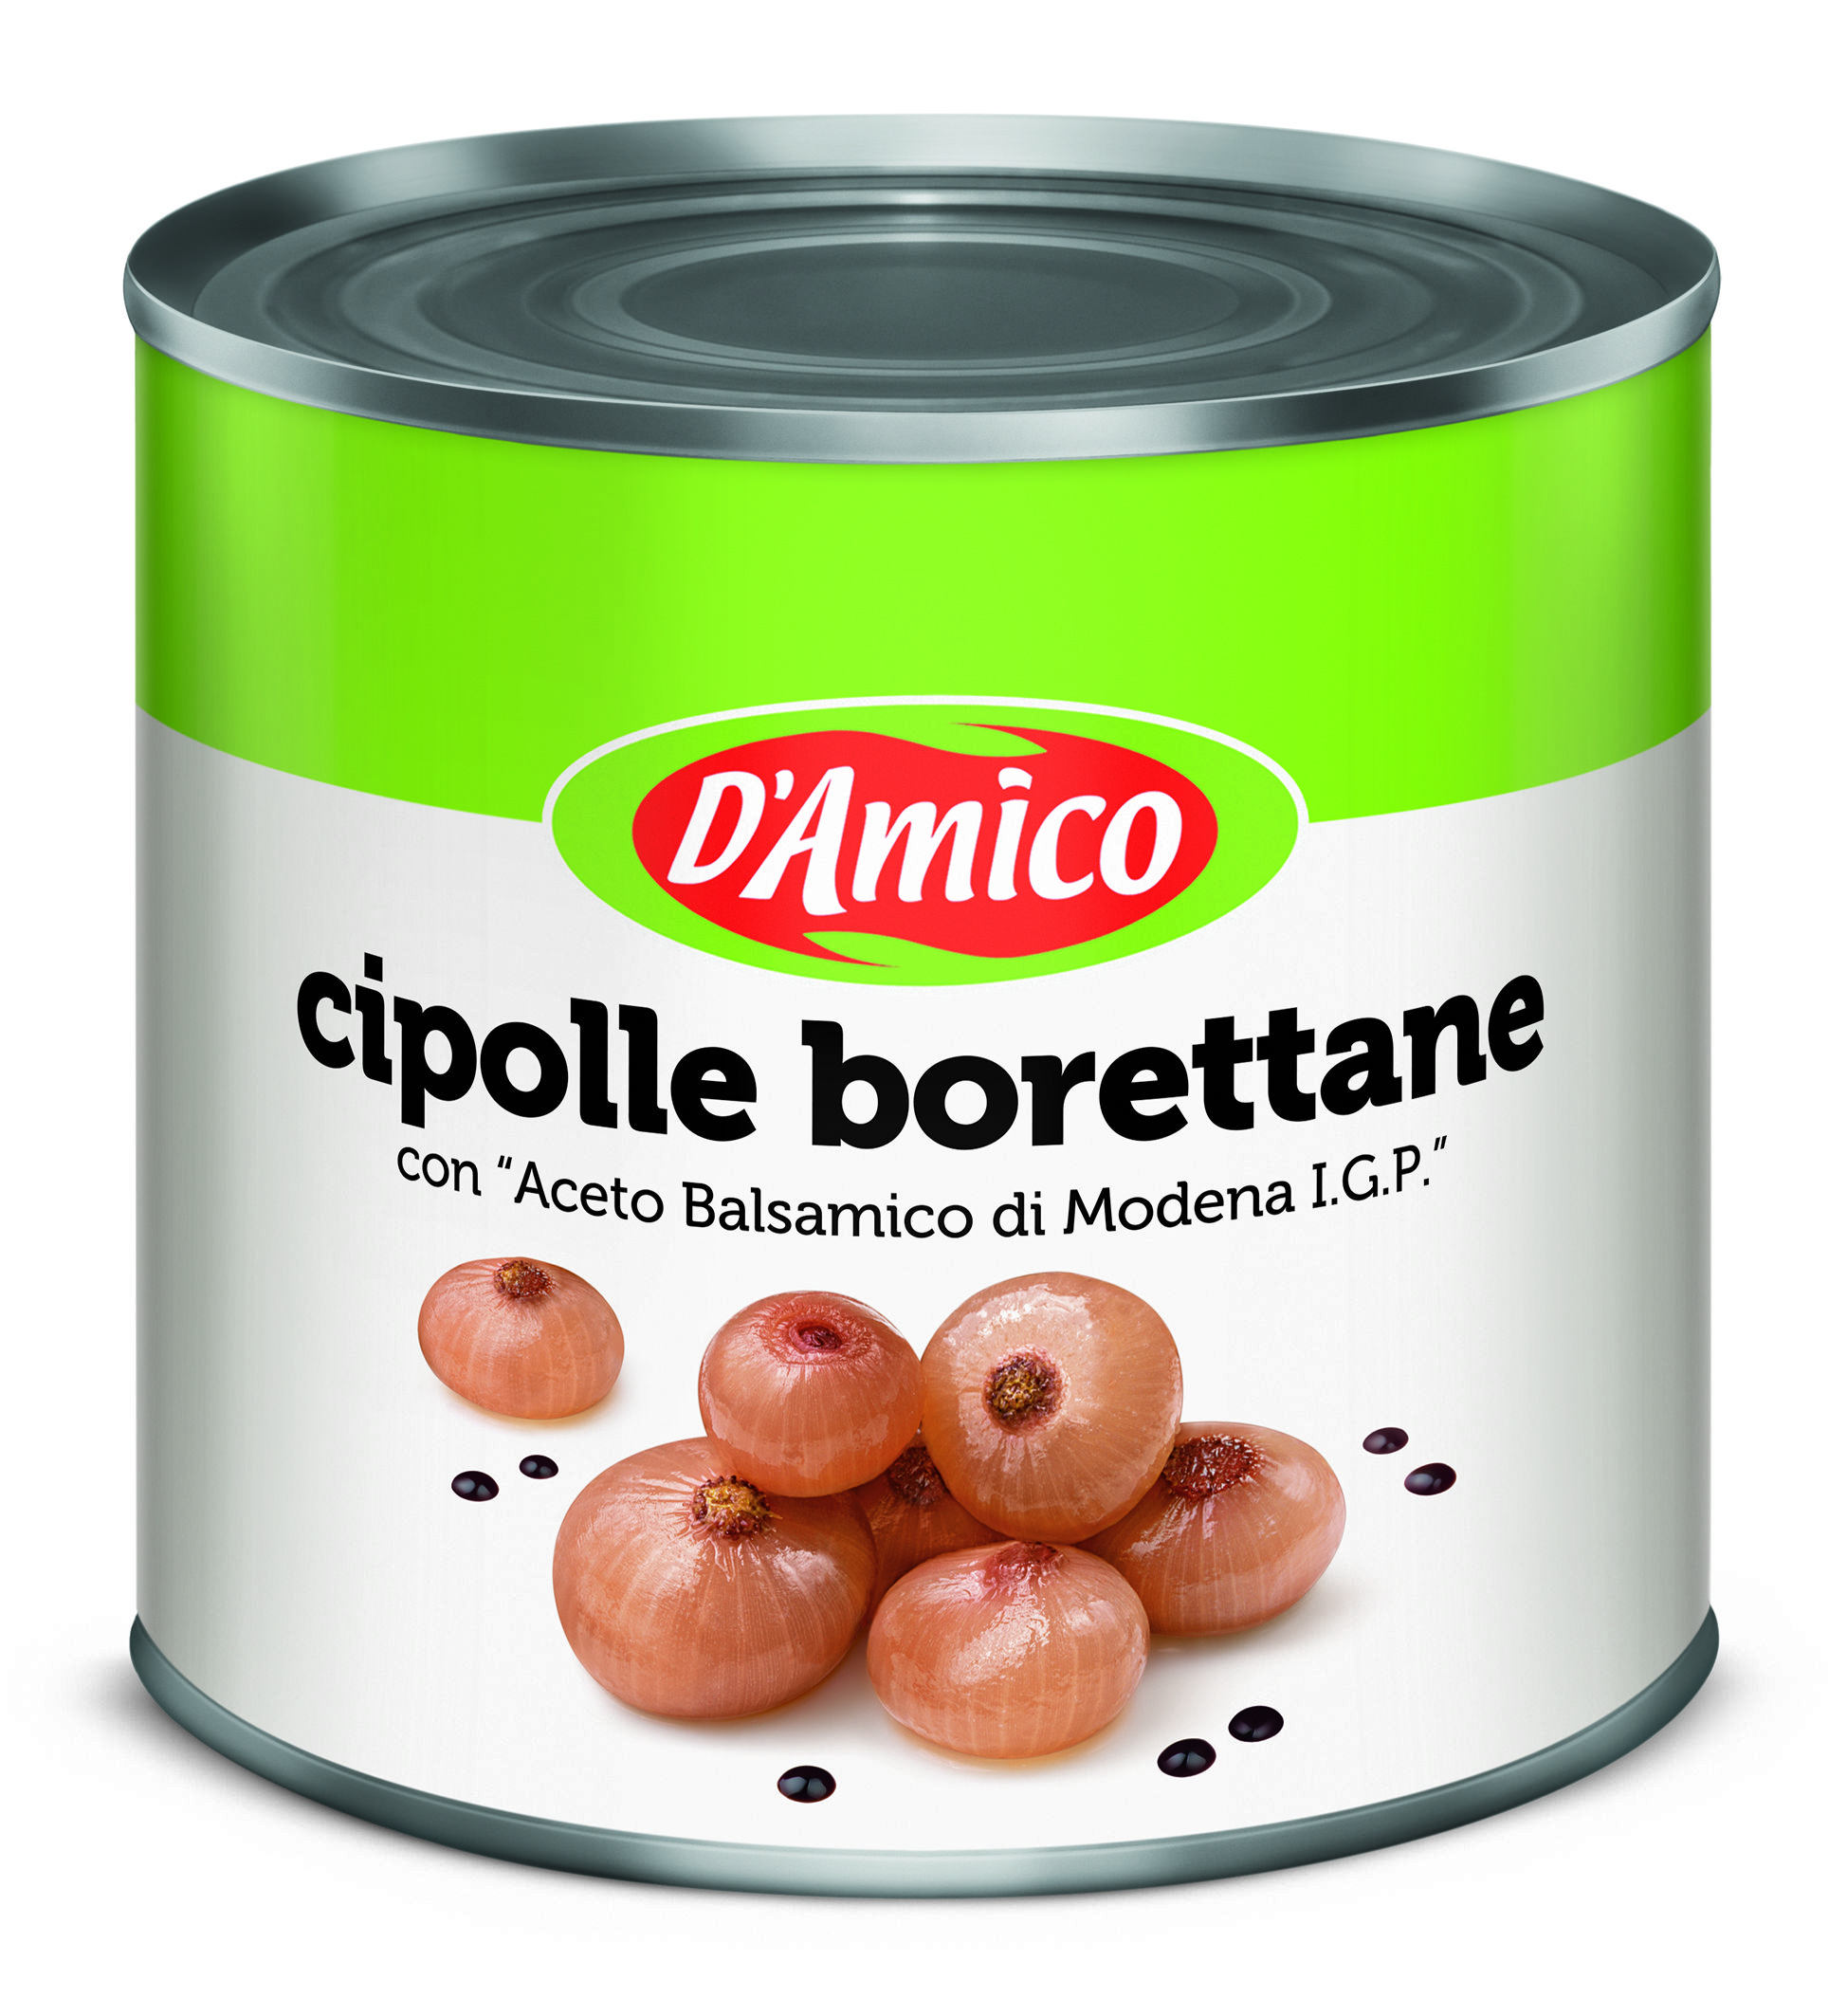 D'Amico Borettane Onions with "Balsamic Vinegar di Modena" 2600g